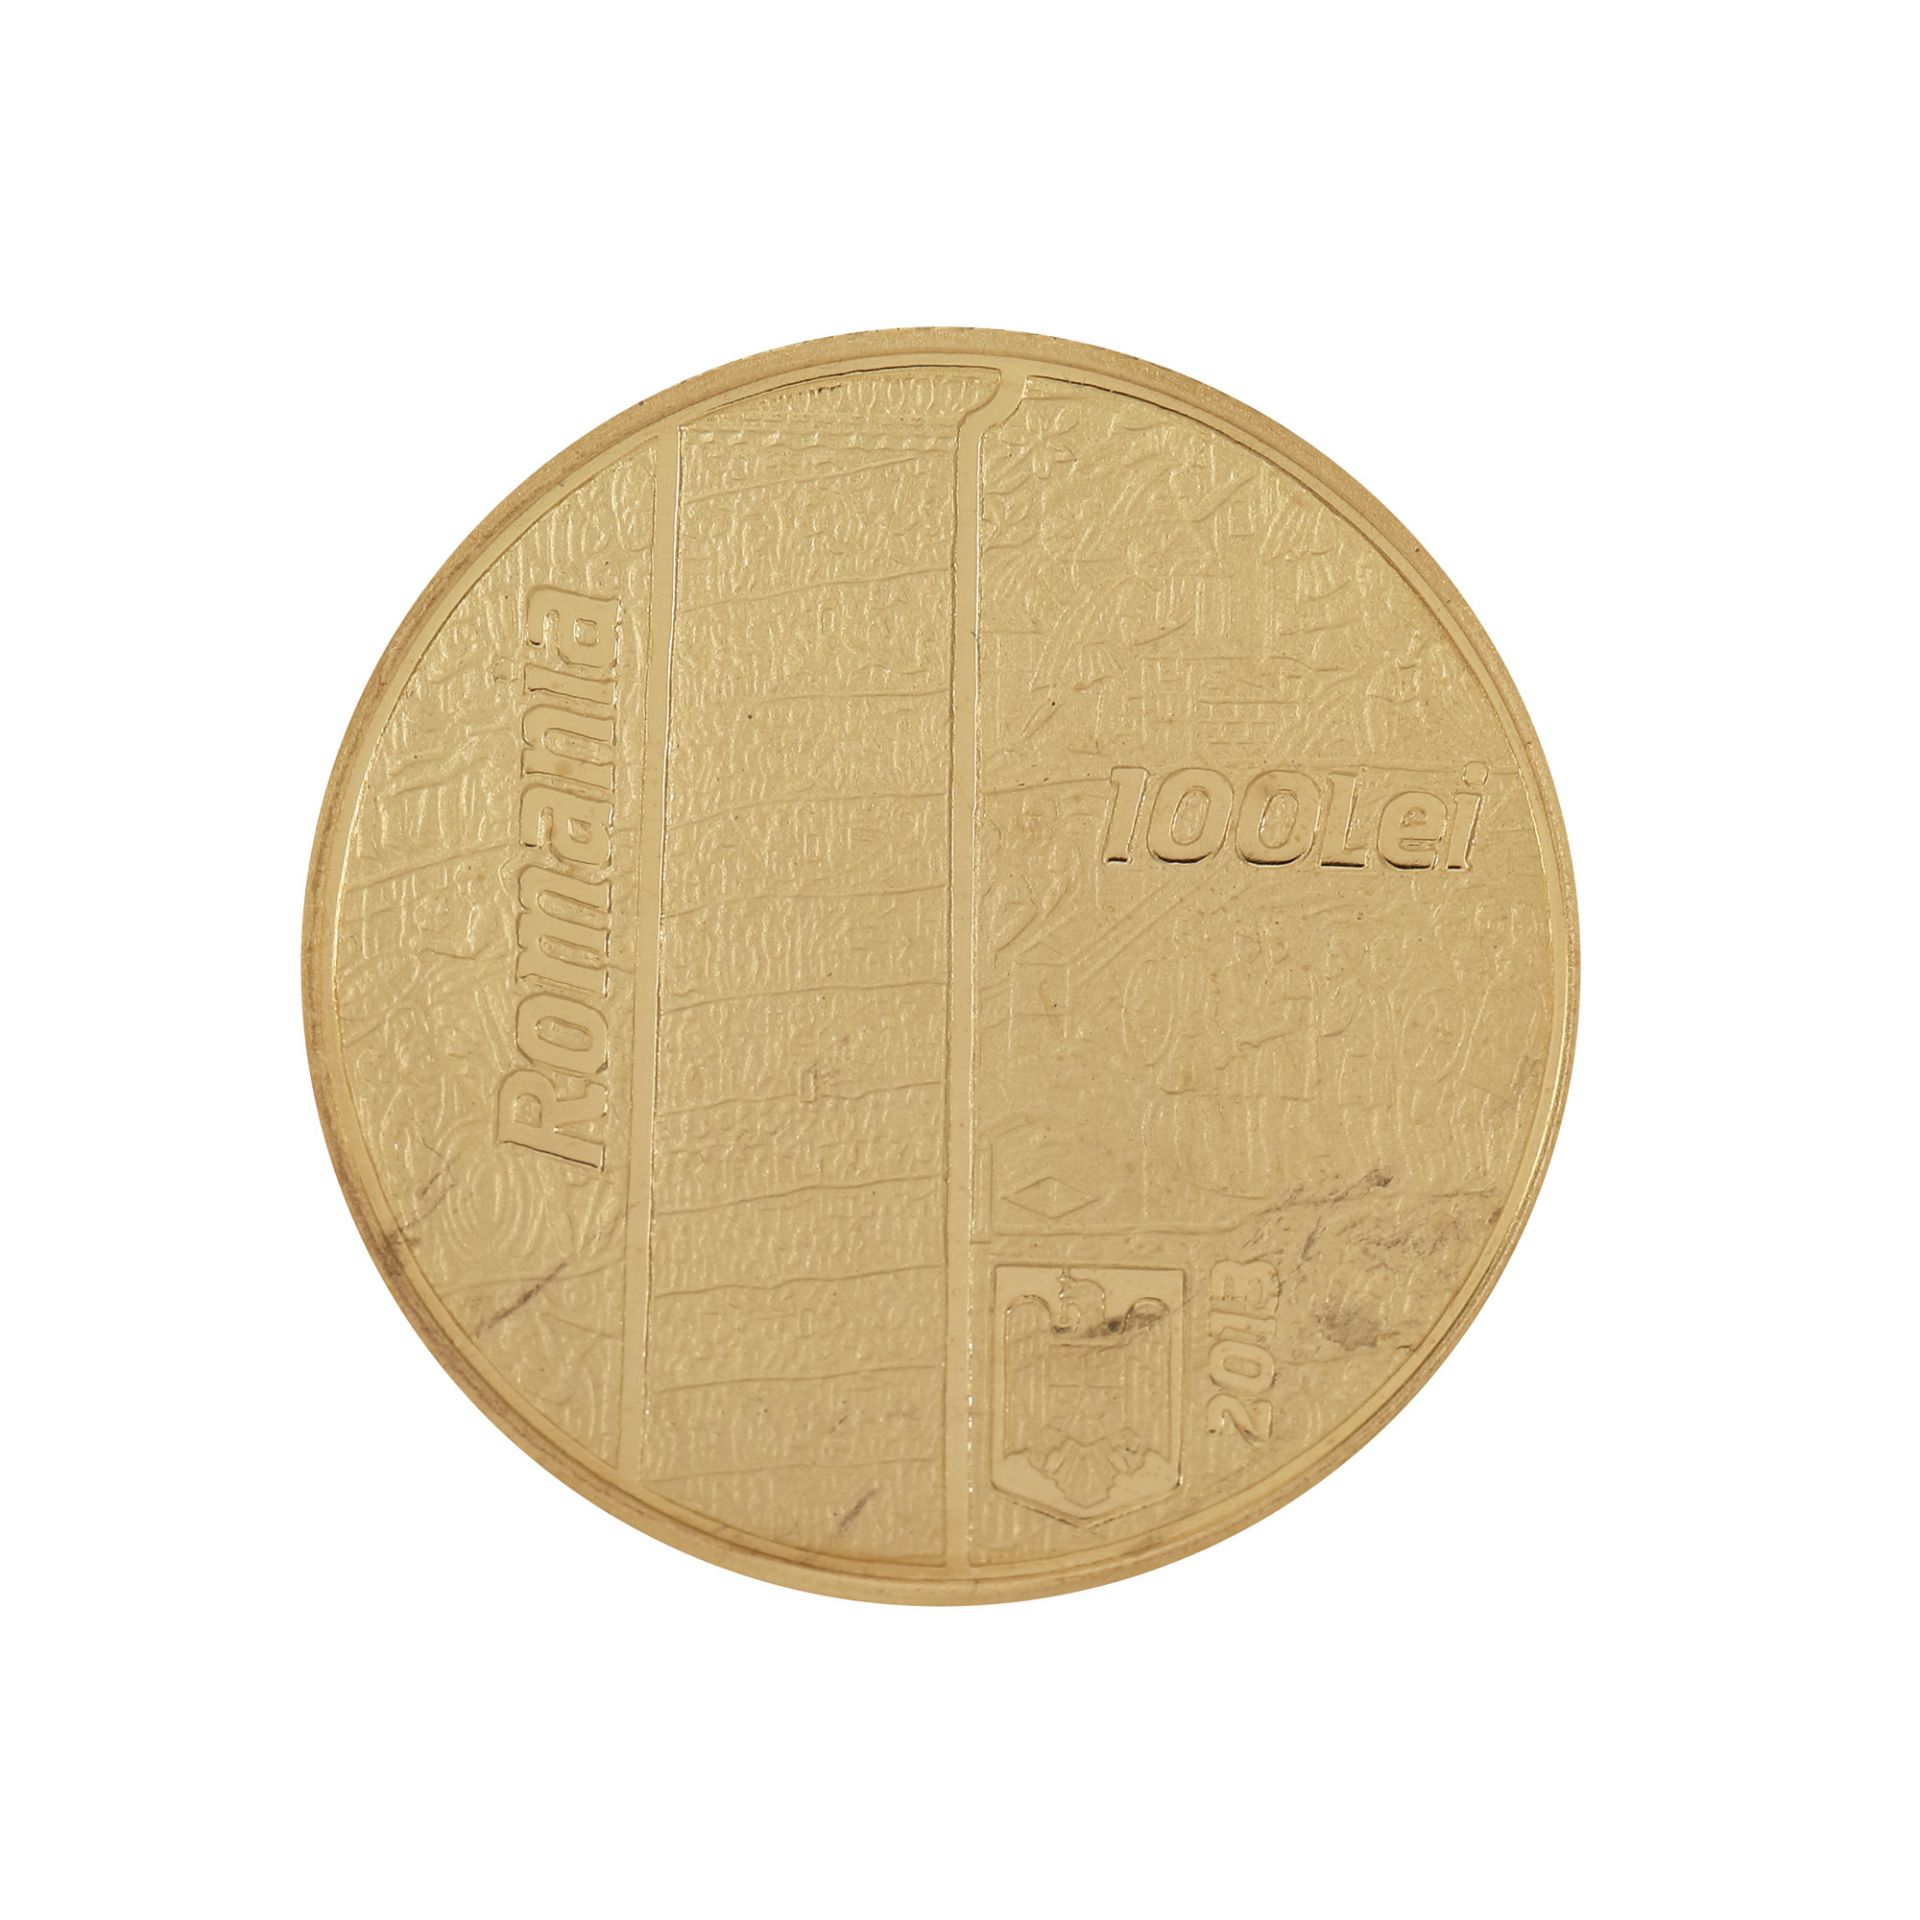 BNR commemorative gold coin, Trajan's Column, 2013 - Image 2 of 2